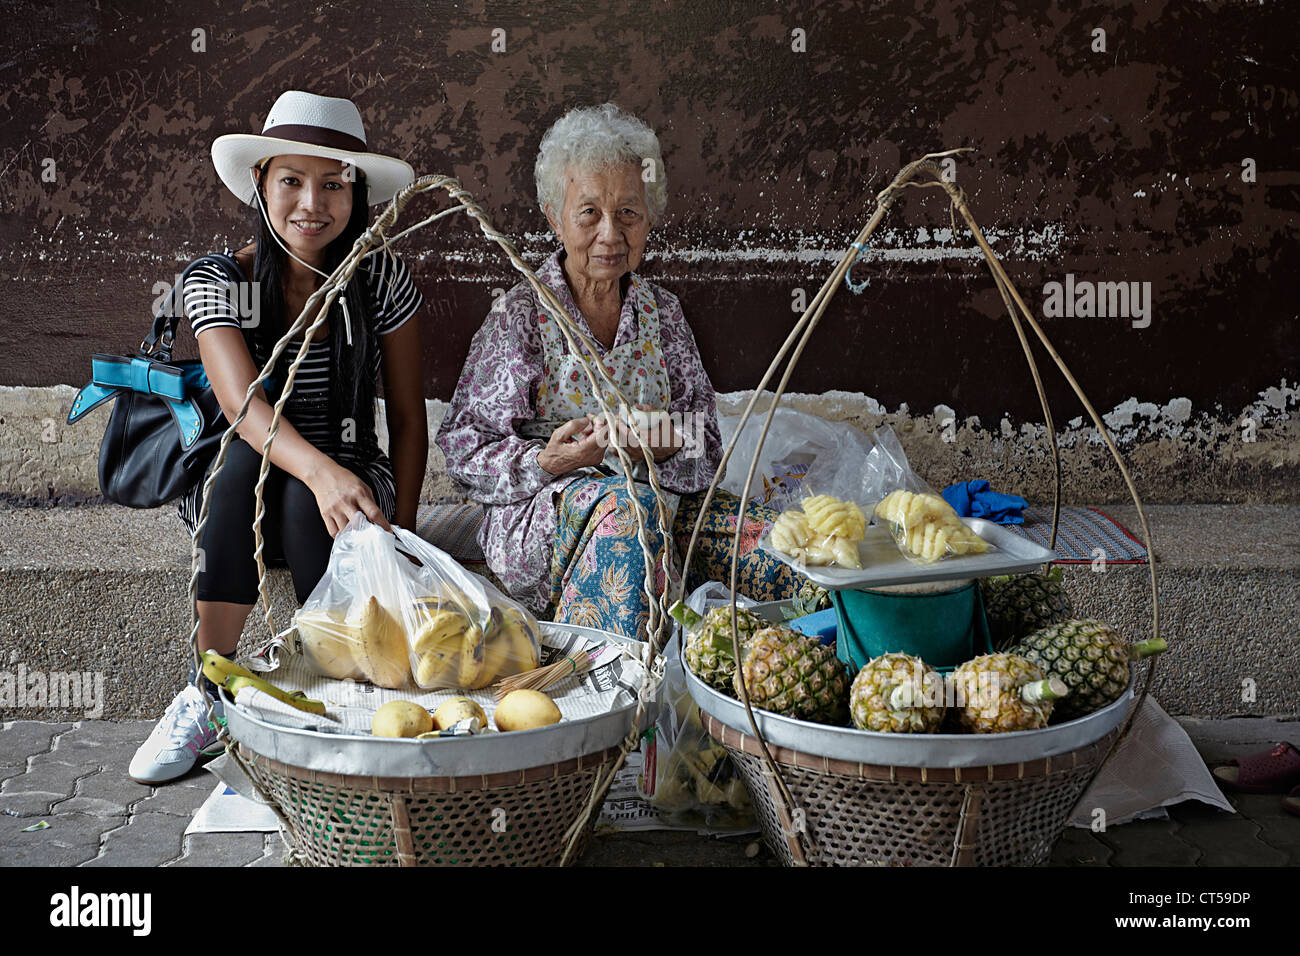 Fornitore di cibo di strada in Thailandia. Donna moderna di giorno con vecchio fornitore tradizionale di cibo di strada femminile della Tailandia. Thailandia S.E. Asia Foto Stock